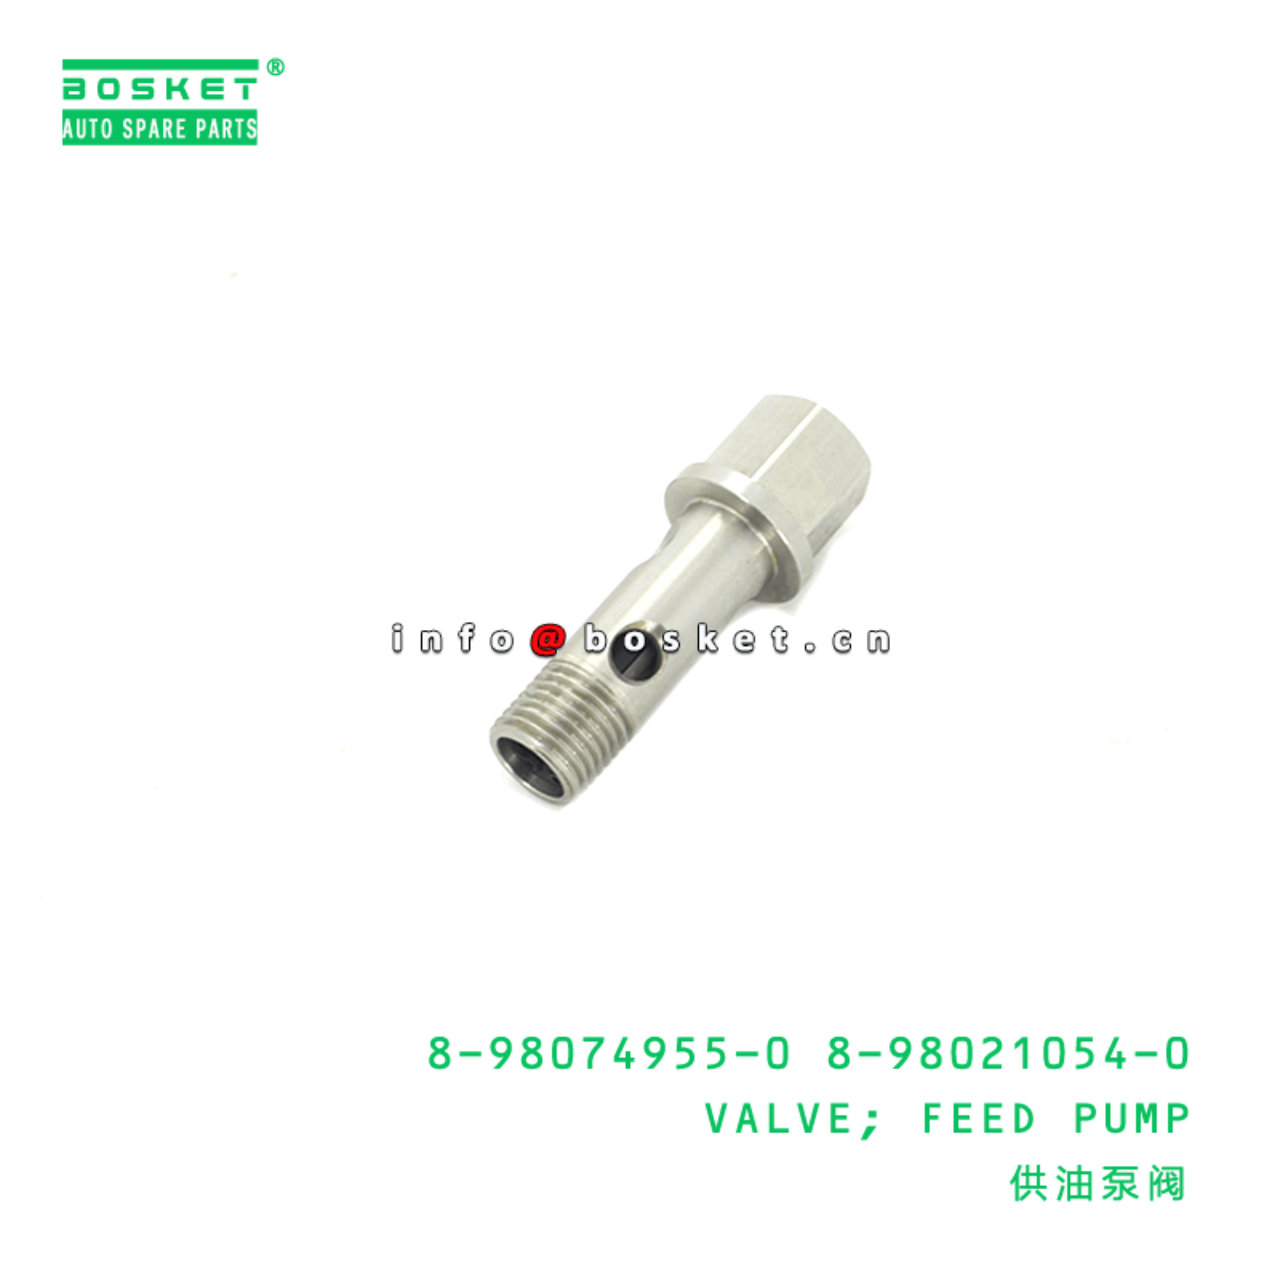 8-98074955-0 8-98021054-0 Feed Pump Valve 8980749550 8980210540 Suitable for ISUZU XD 4HK1